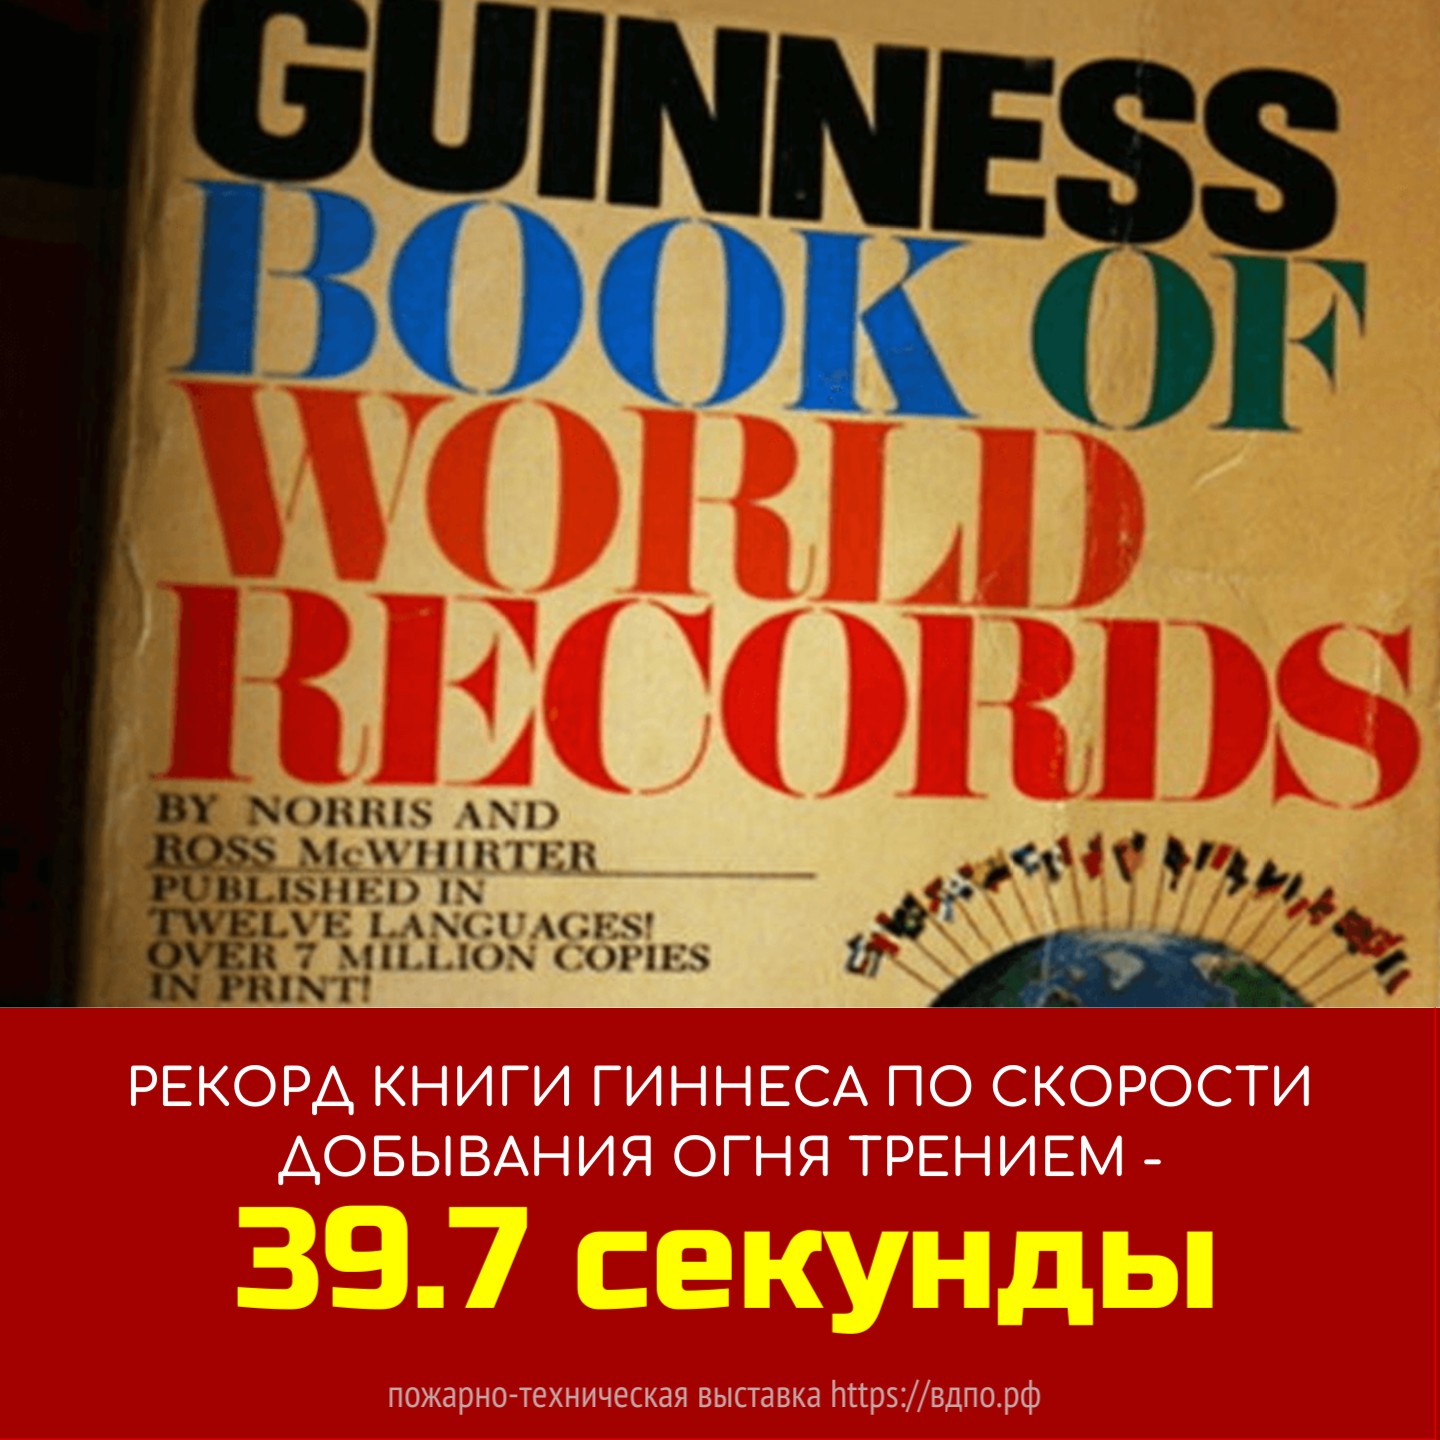 Рекорд Книги Гиннеса по скорости добывания огня трением - 39,7 секунды  В книгу Гиннеса занесен рекорд по скорости добывания огня от трения двух палочек. Извлечь огонь......